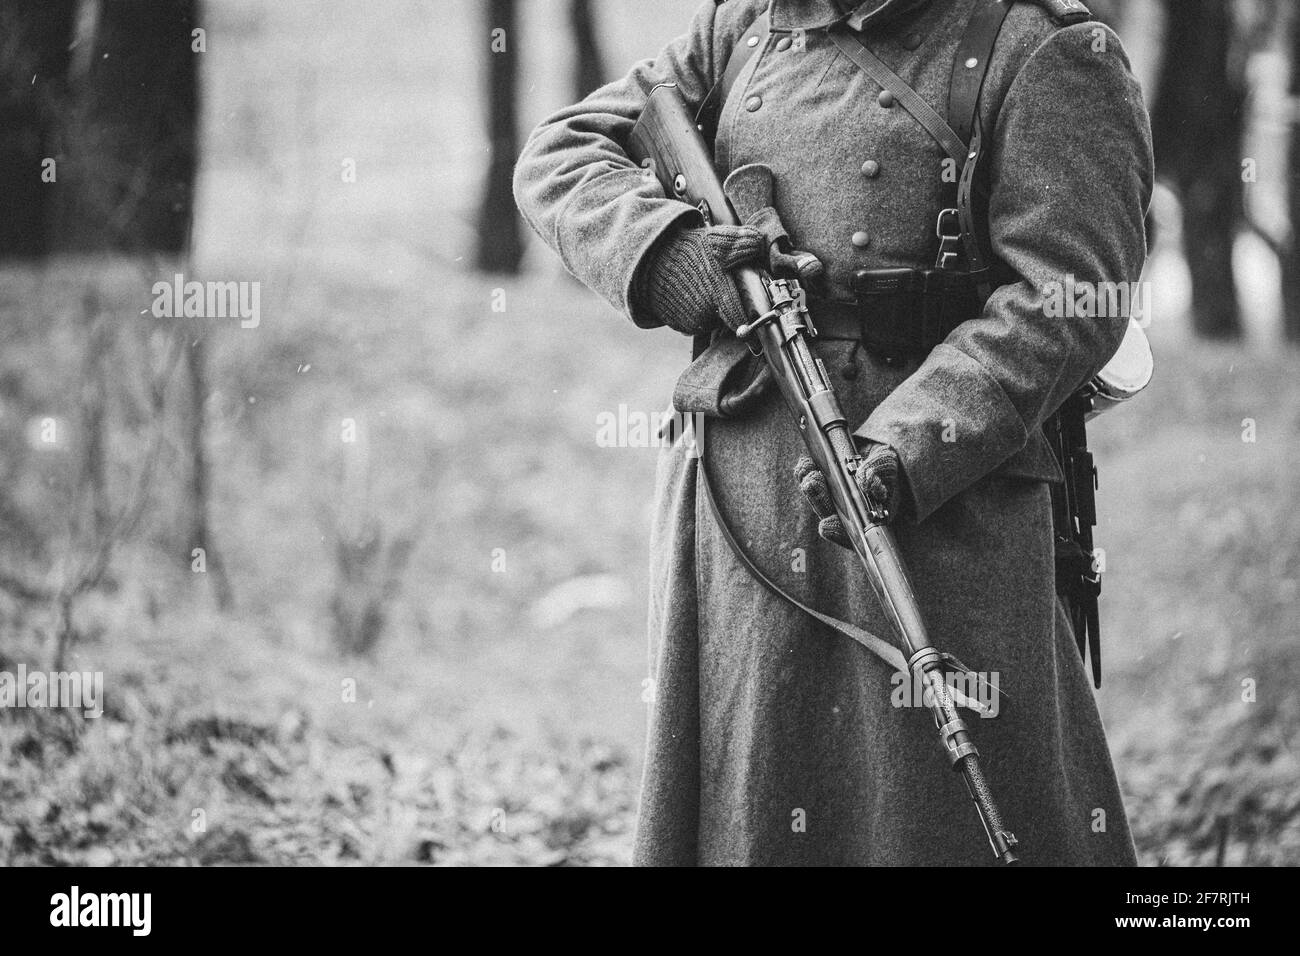 Nahaufnahme der deutschen Militärmunition eines deutschen Soldaten im Zweiten Weltkrieg Warme Herbstkleidung, Soldatenmantel, Handschuhe, Gewehr. Schwarz Und Weiß Stockfoto